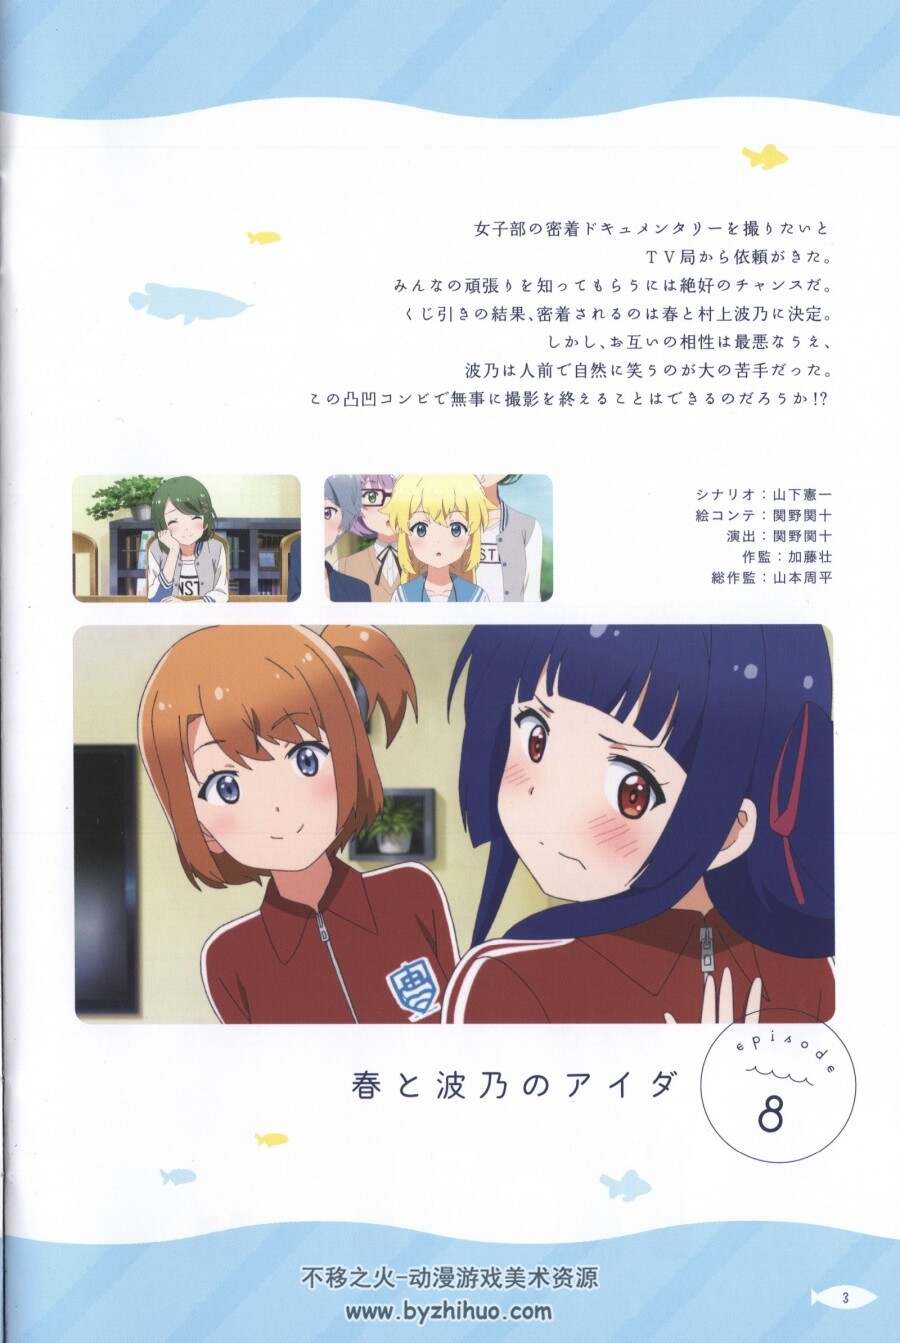 【免费】天空与海洋之间 动画特典小册子 / Sora to Umi no Aida - Special Booklet  36P